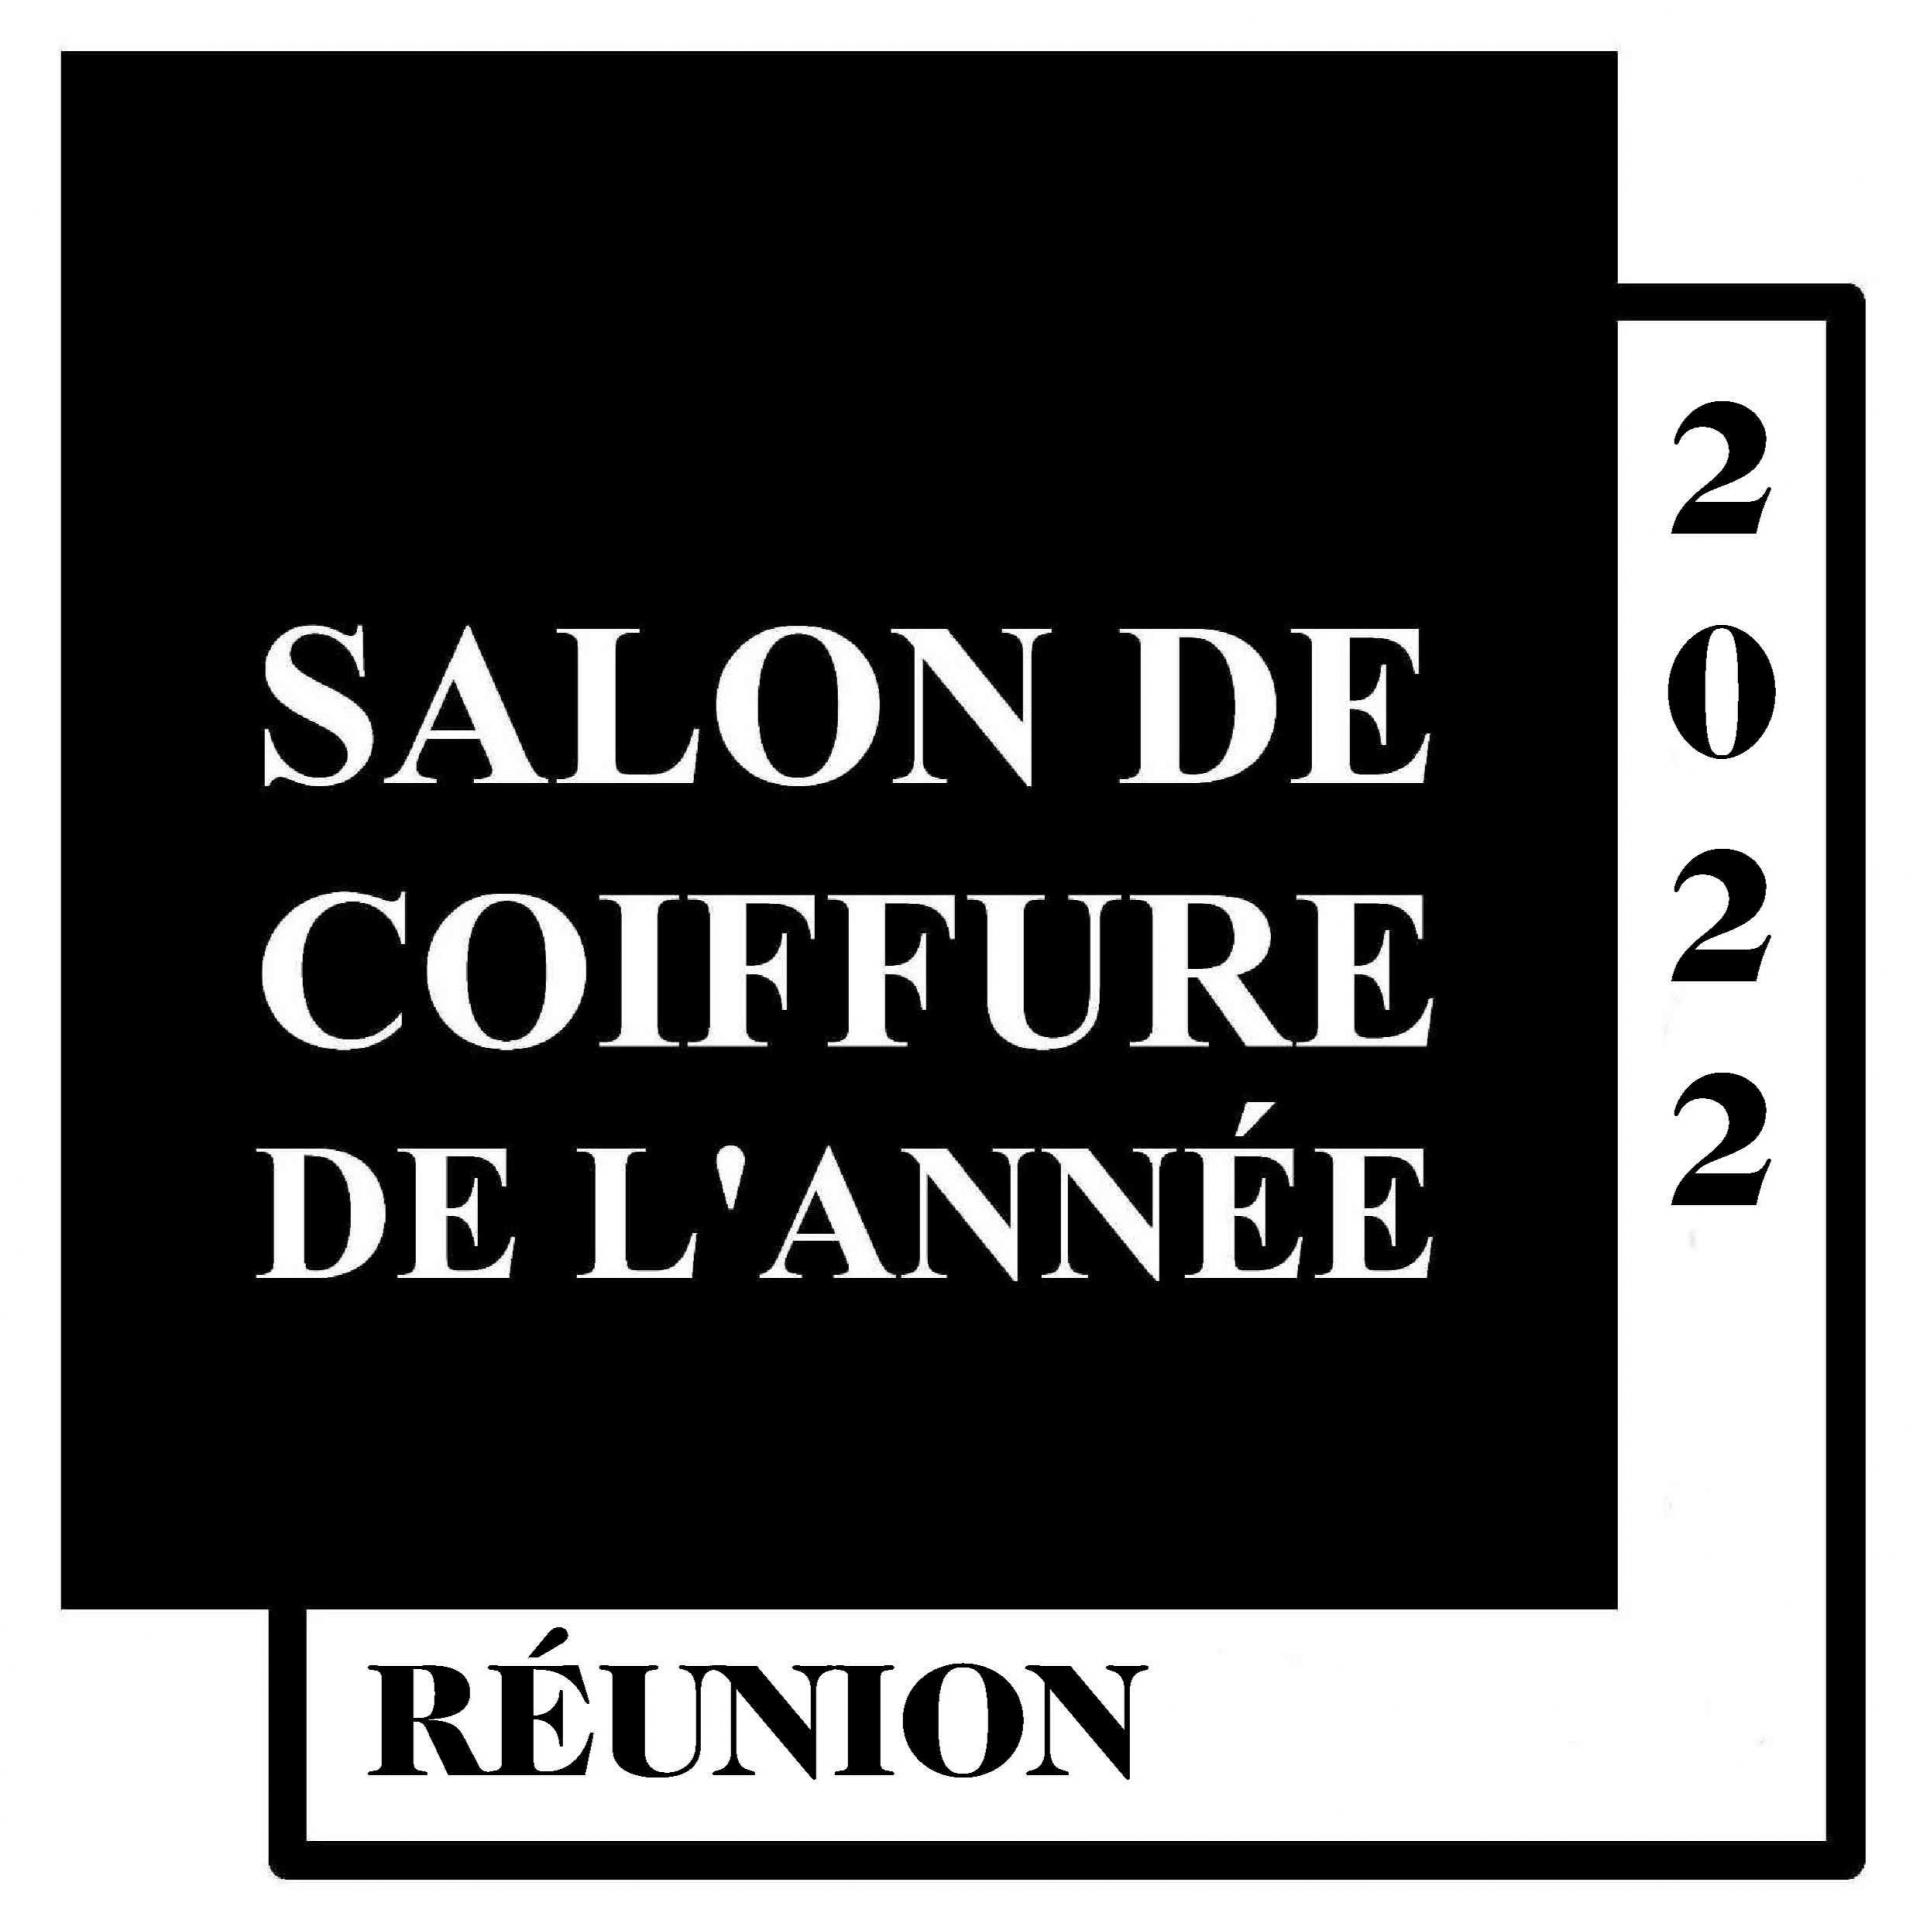 Salon de coiffure de l annee logo de la reunion